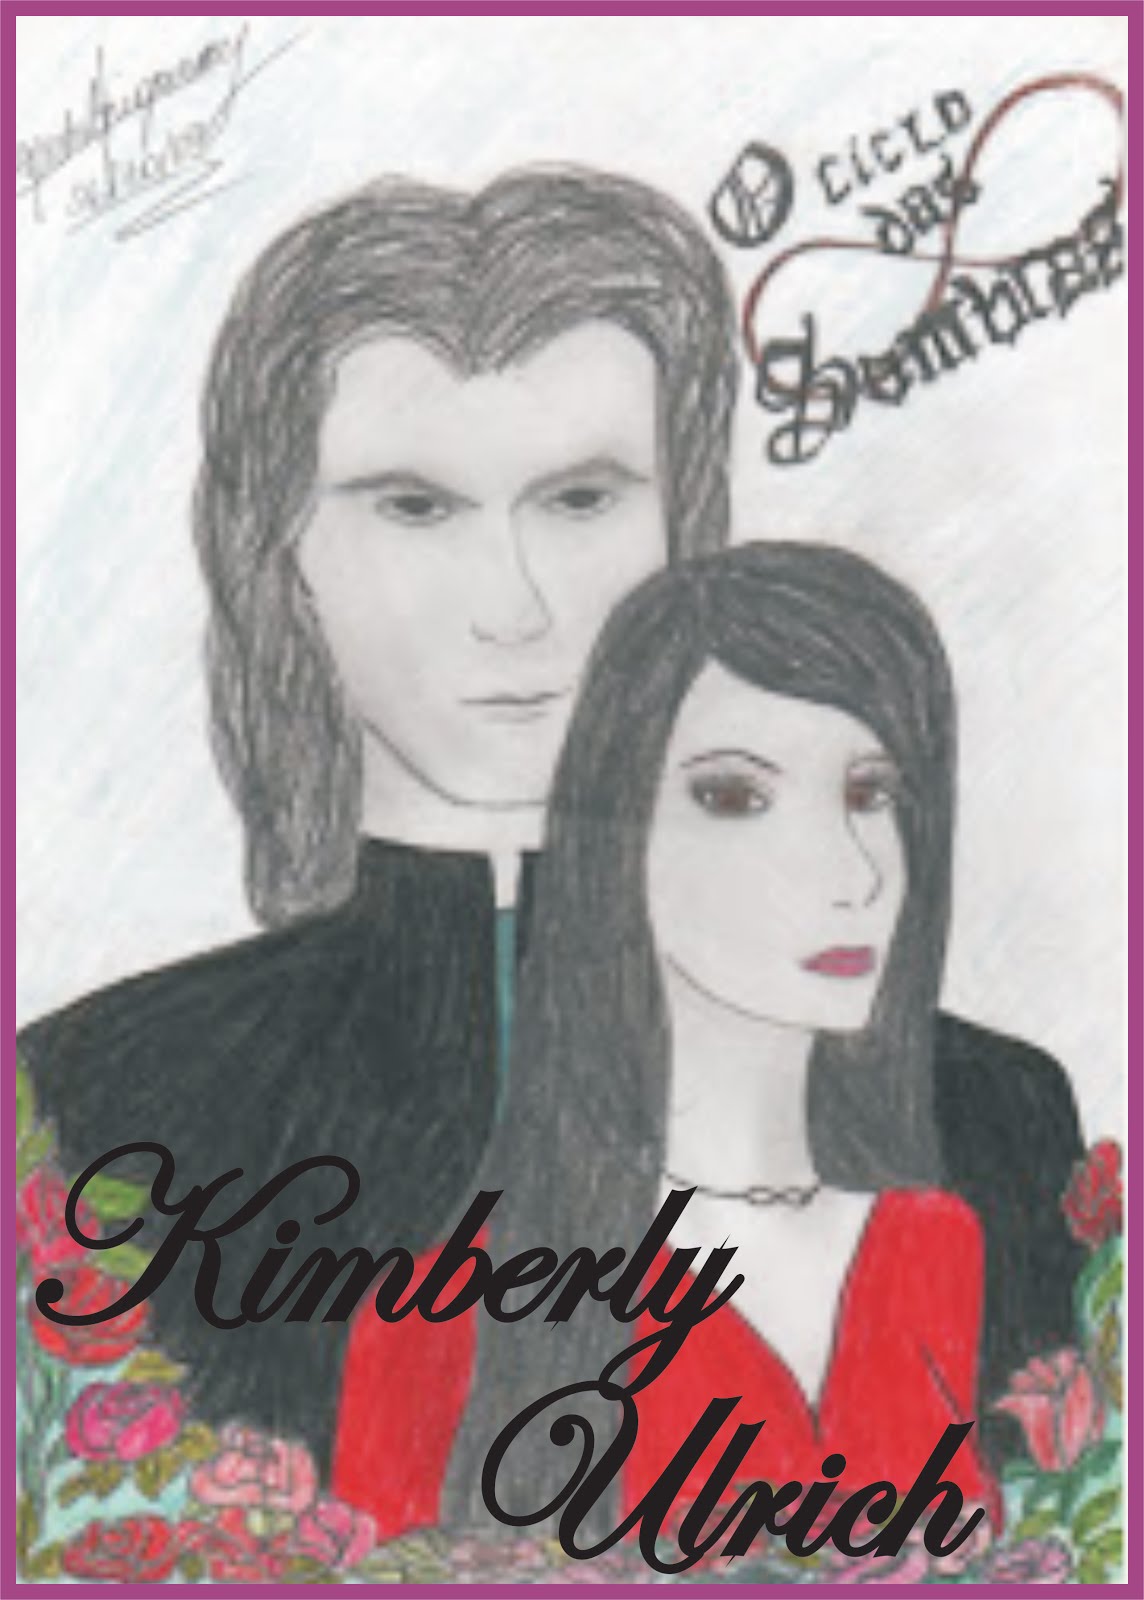 Kimberly e Ulrich